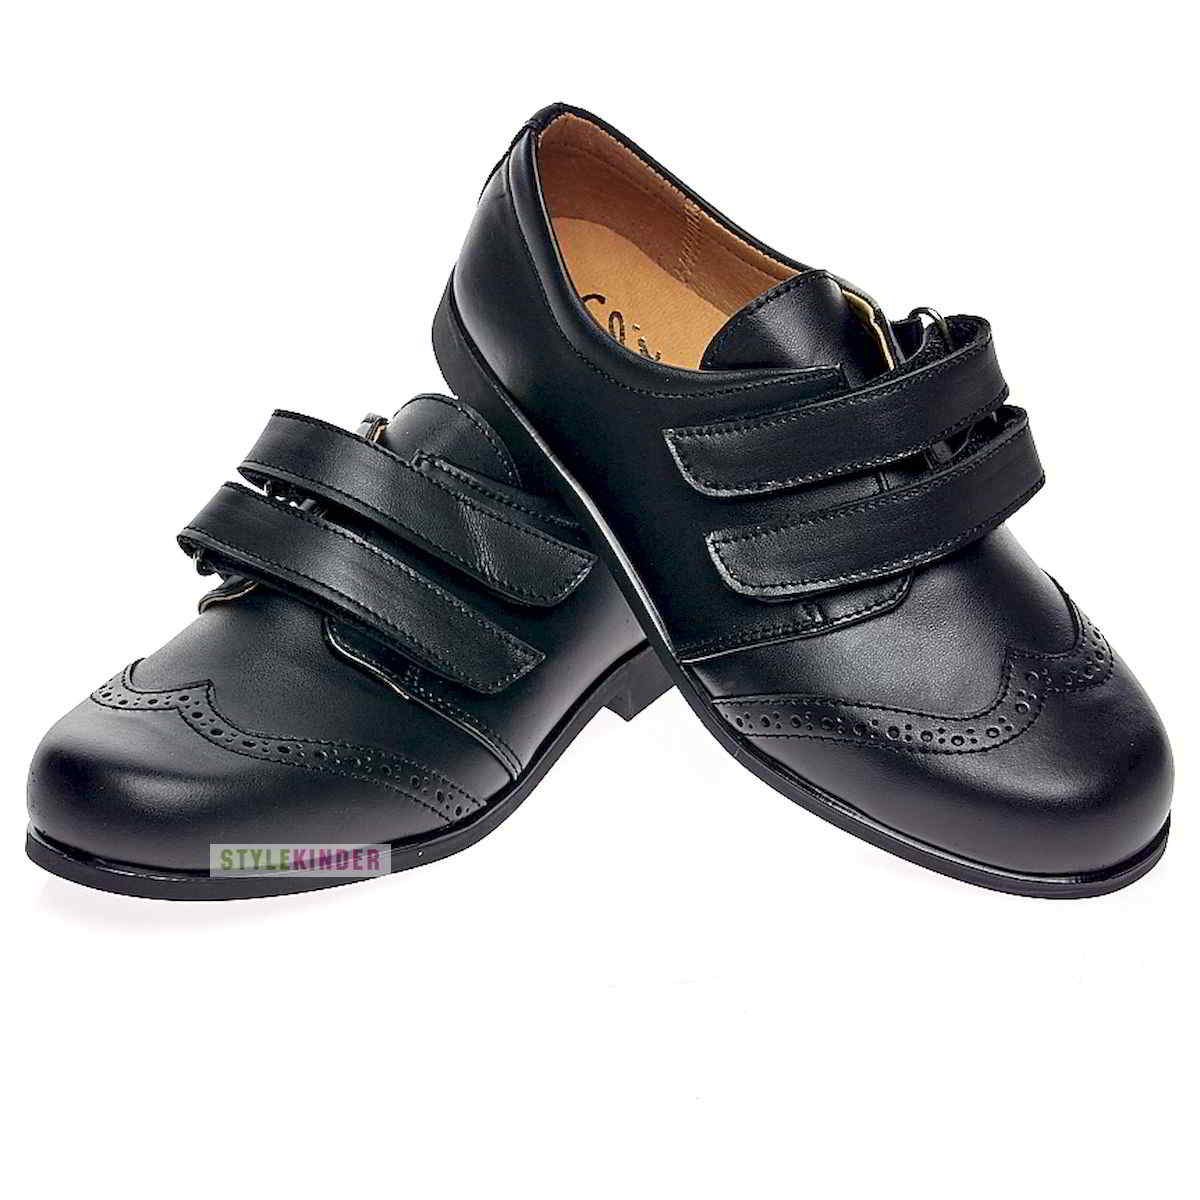 Авито ботинки мальчику. Туфли для мальчика. Школьные ботинки для мальчика. Туфли детские мальчику. Обувь для школы для мальчиков.